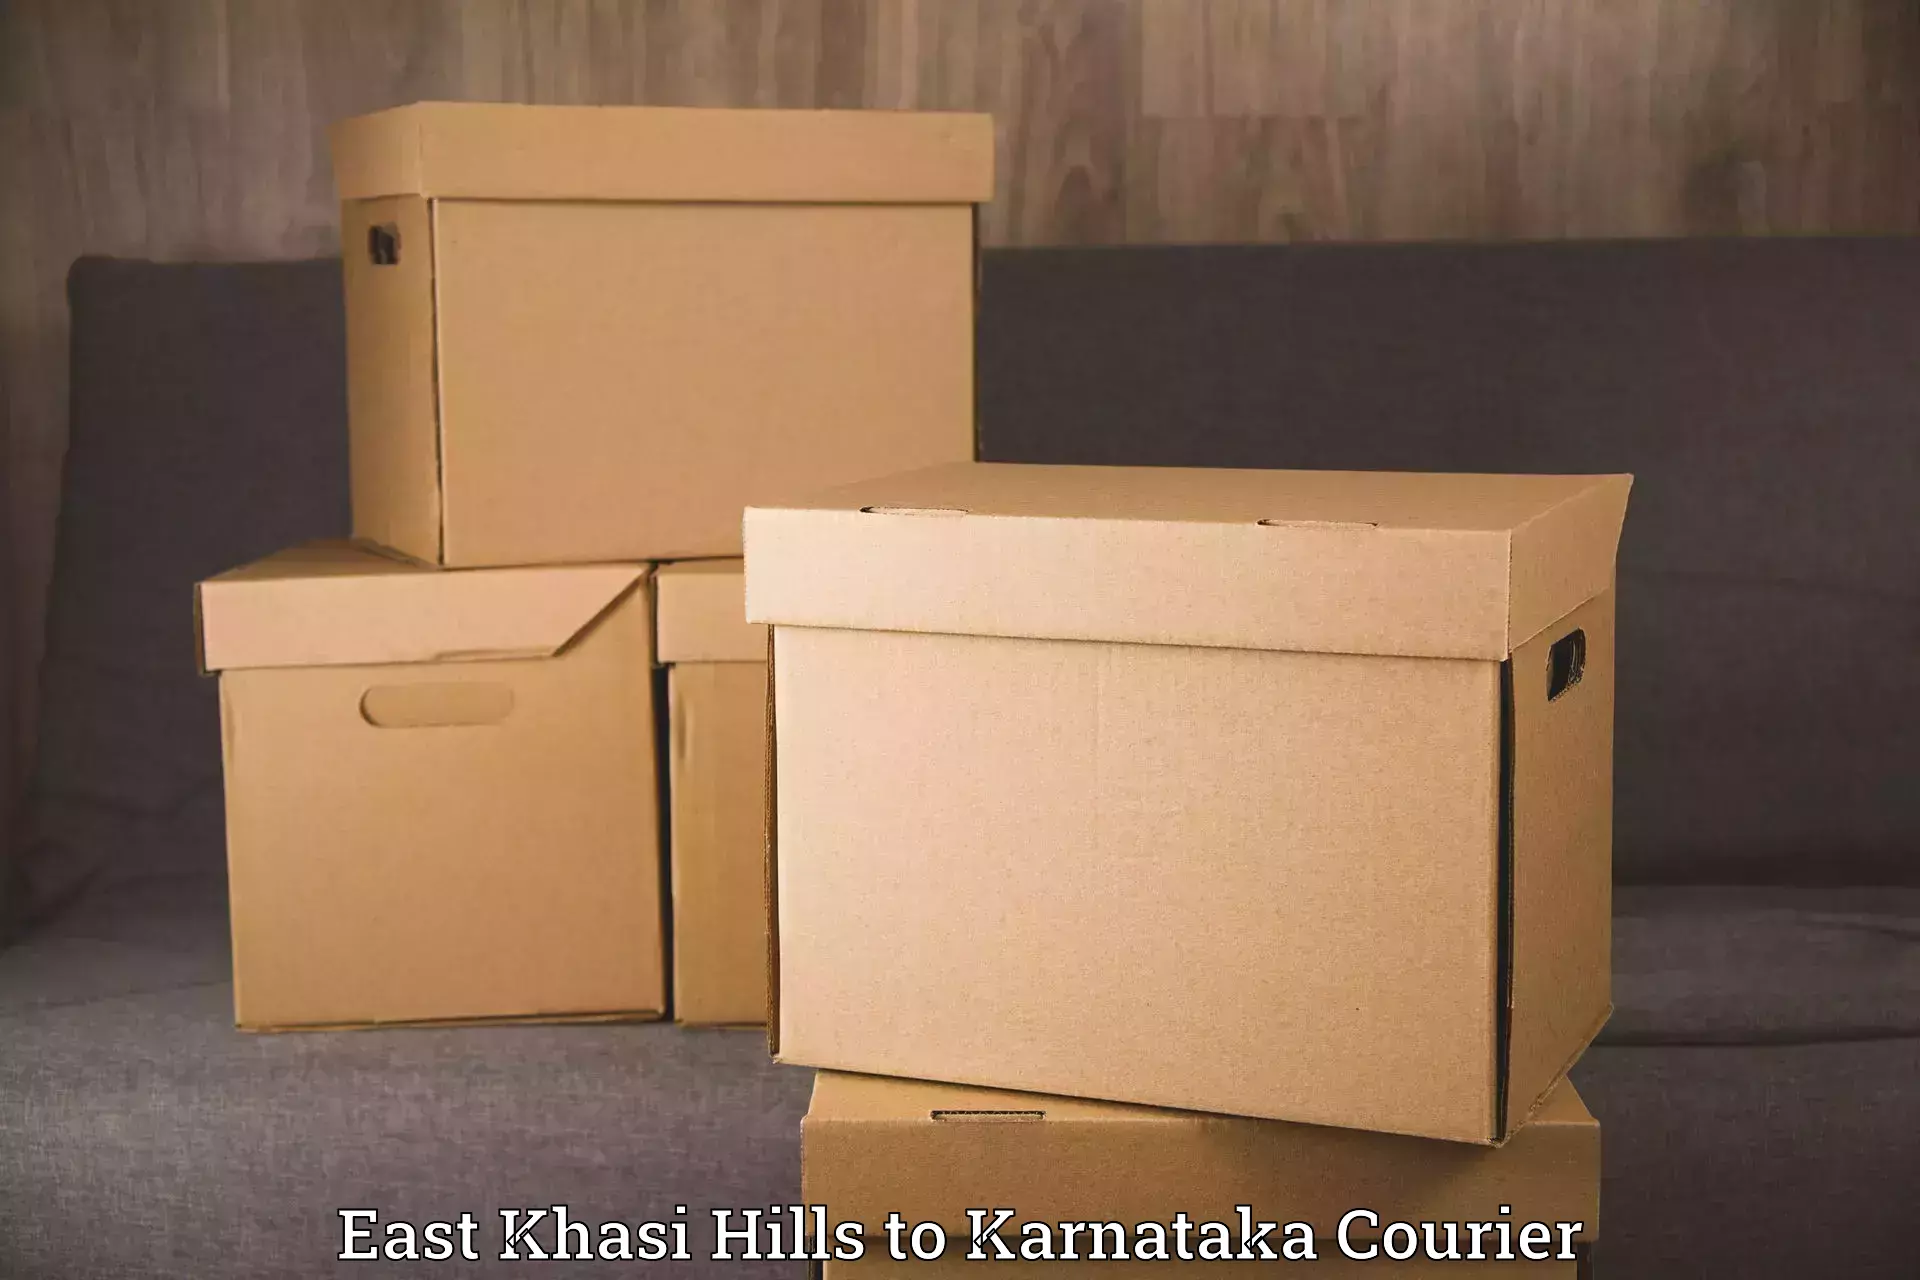 Door-to-door relocation services East Khasi Hills to Manipal